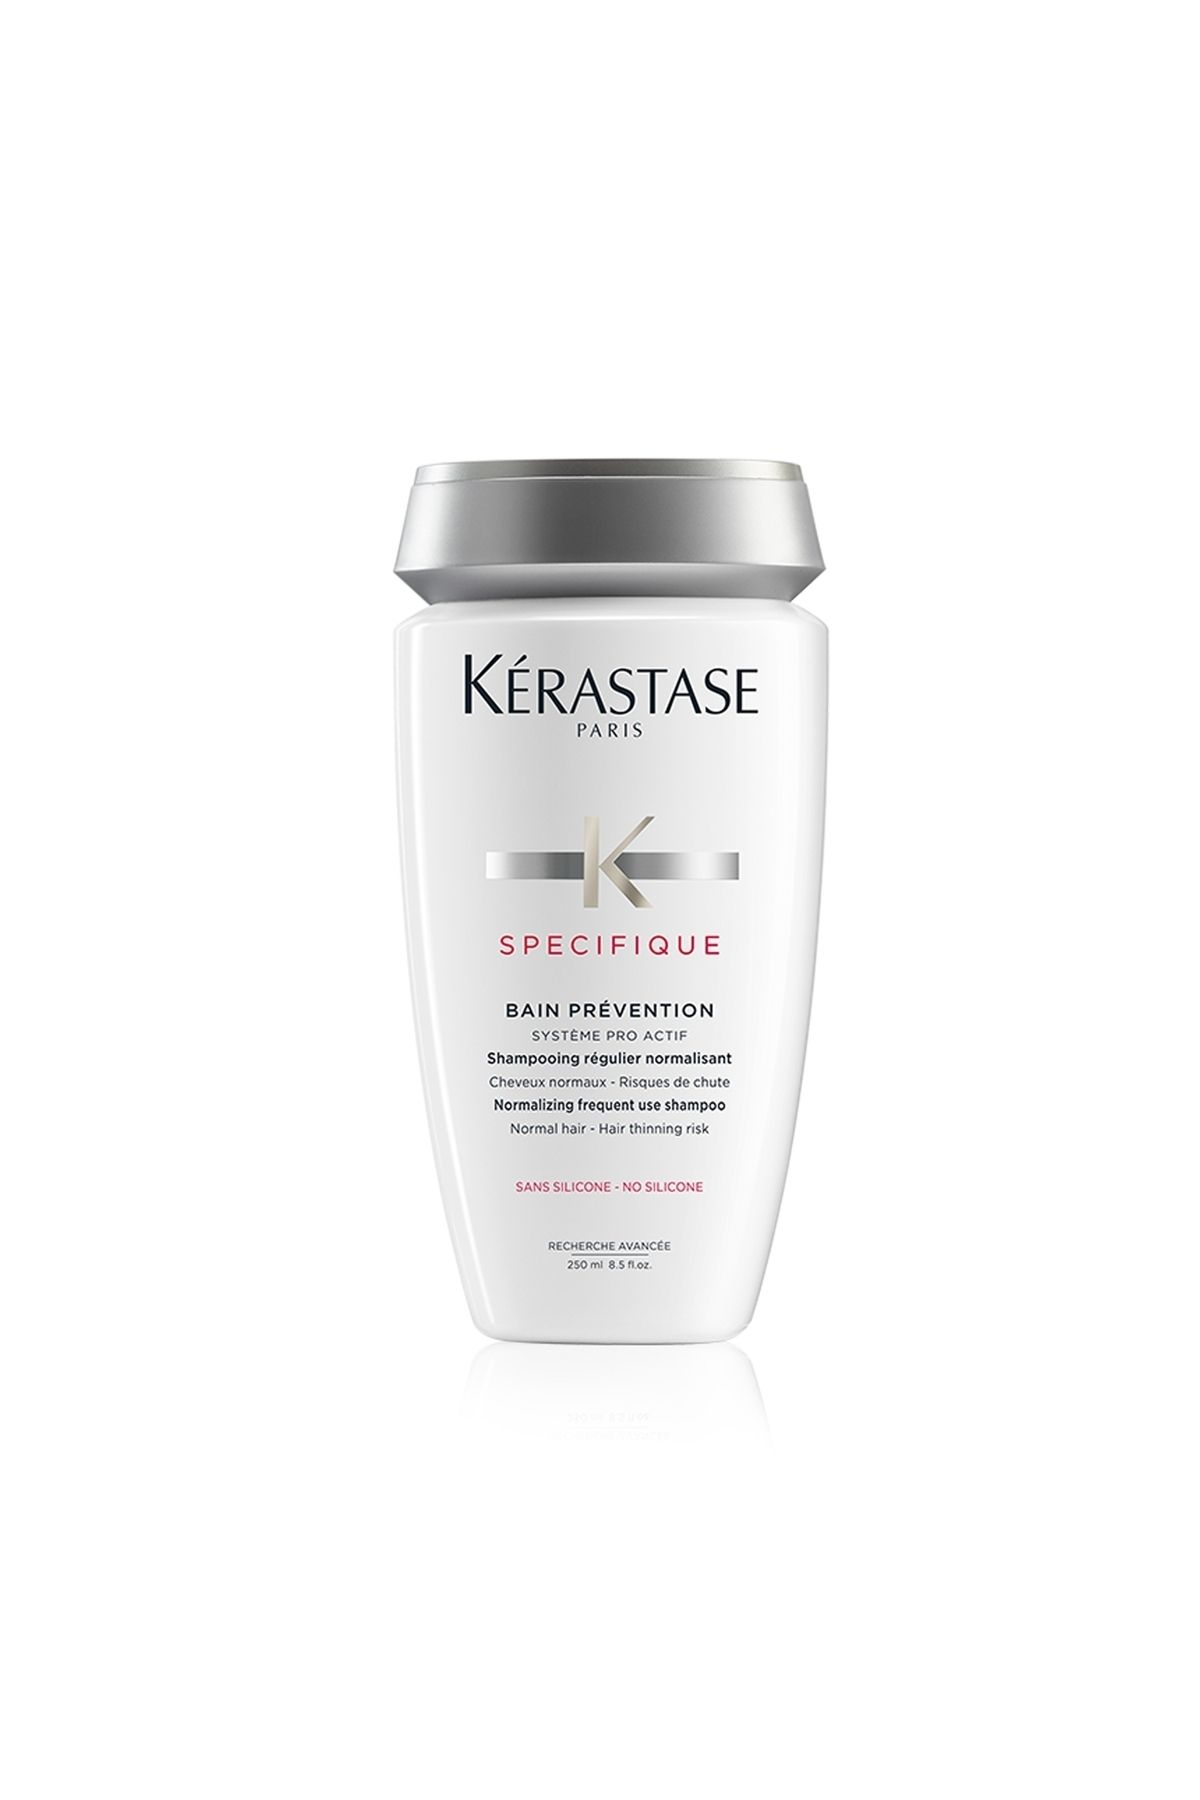 Kerastase Trusty Kérastase Specifiue Bain Prevention Saç Dökülme Karşıtı Şampuan 250 ml TR442